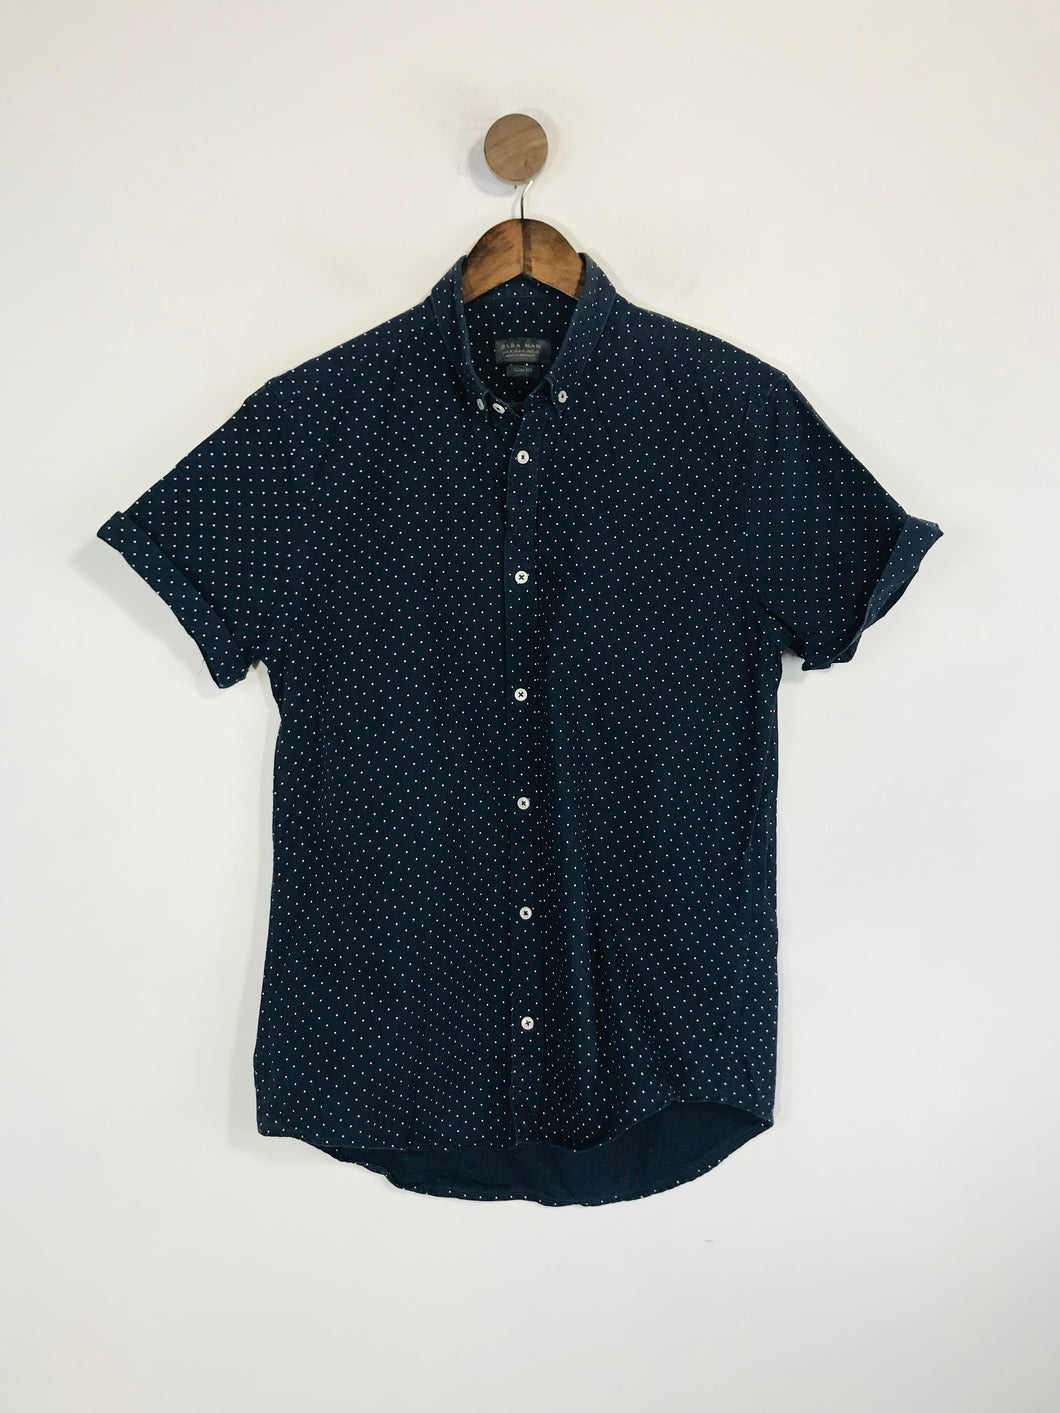 Zara Men's Polka Dot Short Sleeve Button-Up Shirt | M | Blue